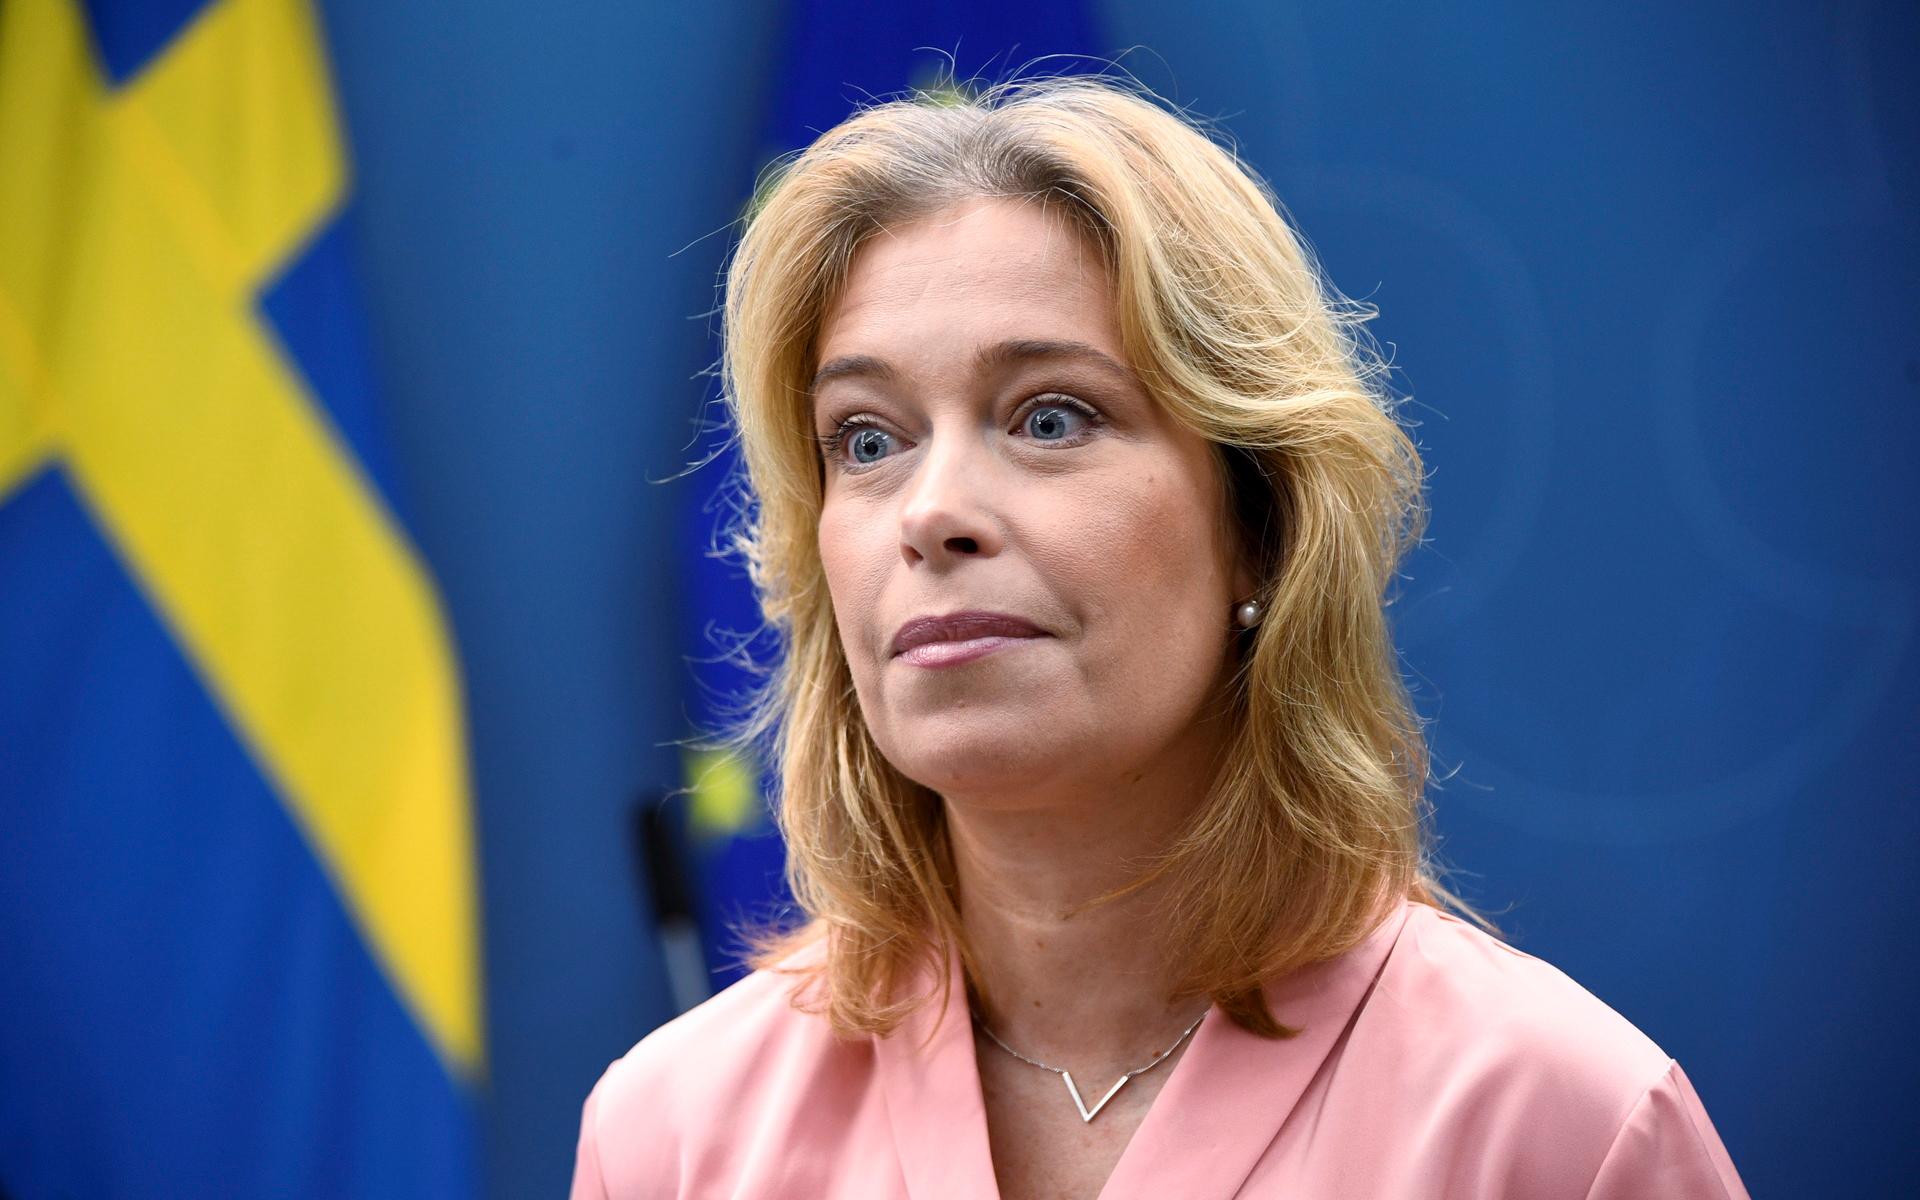 Klimat- och miljöministern Annika Strandhäll (S) höll pressträff om havsbaserad vindkraft.